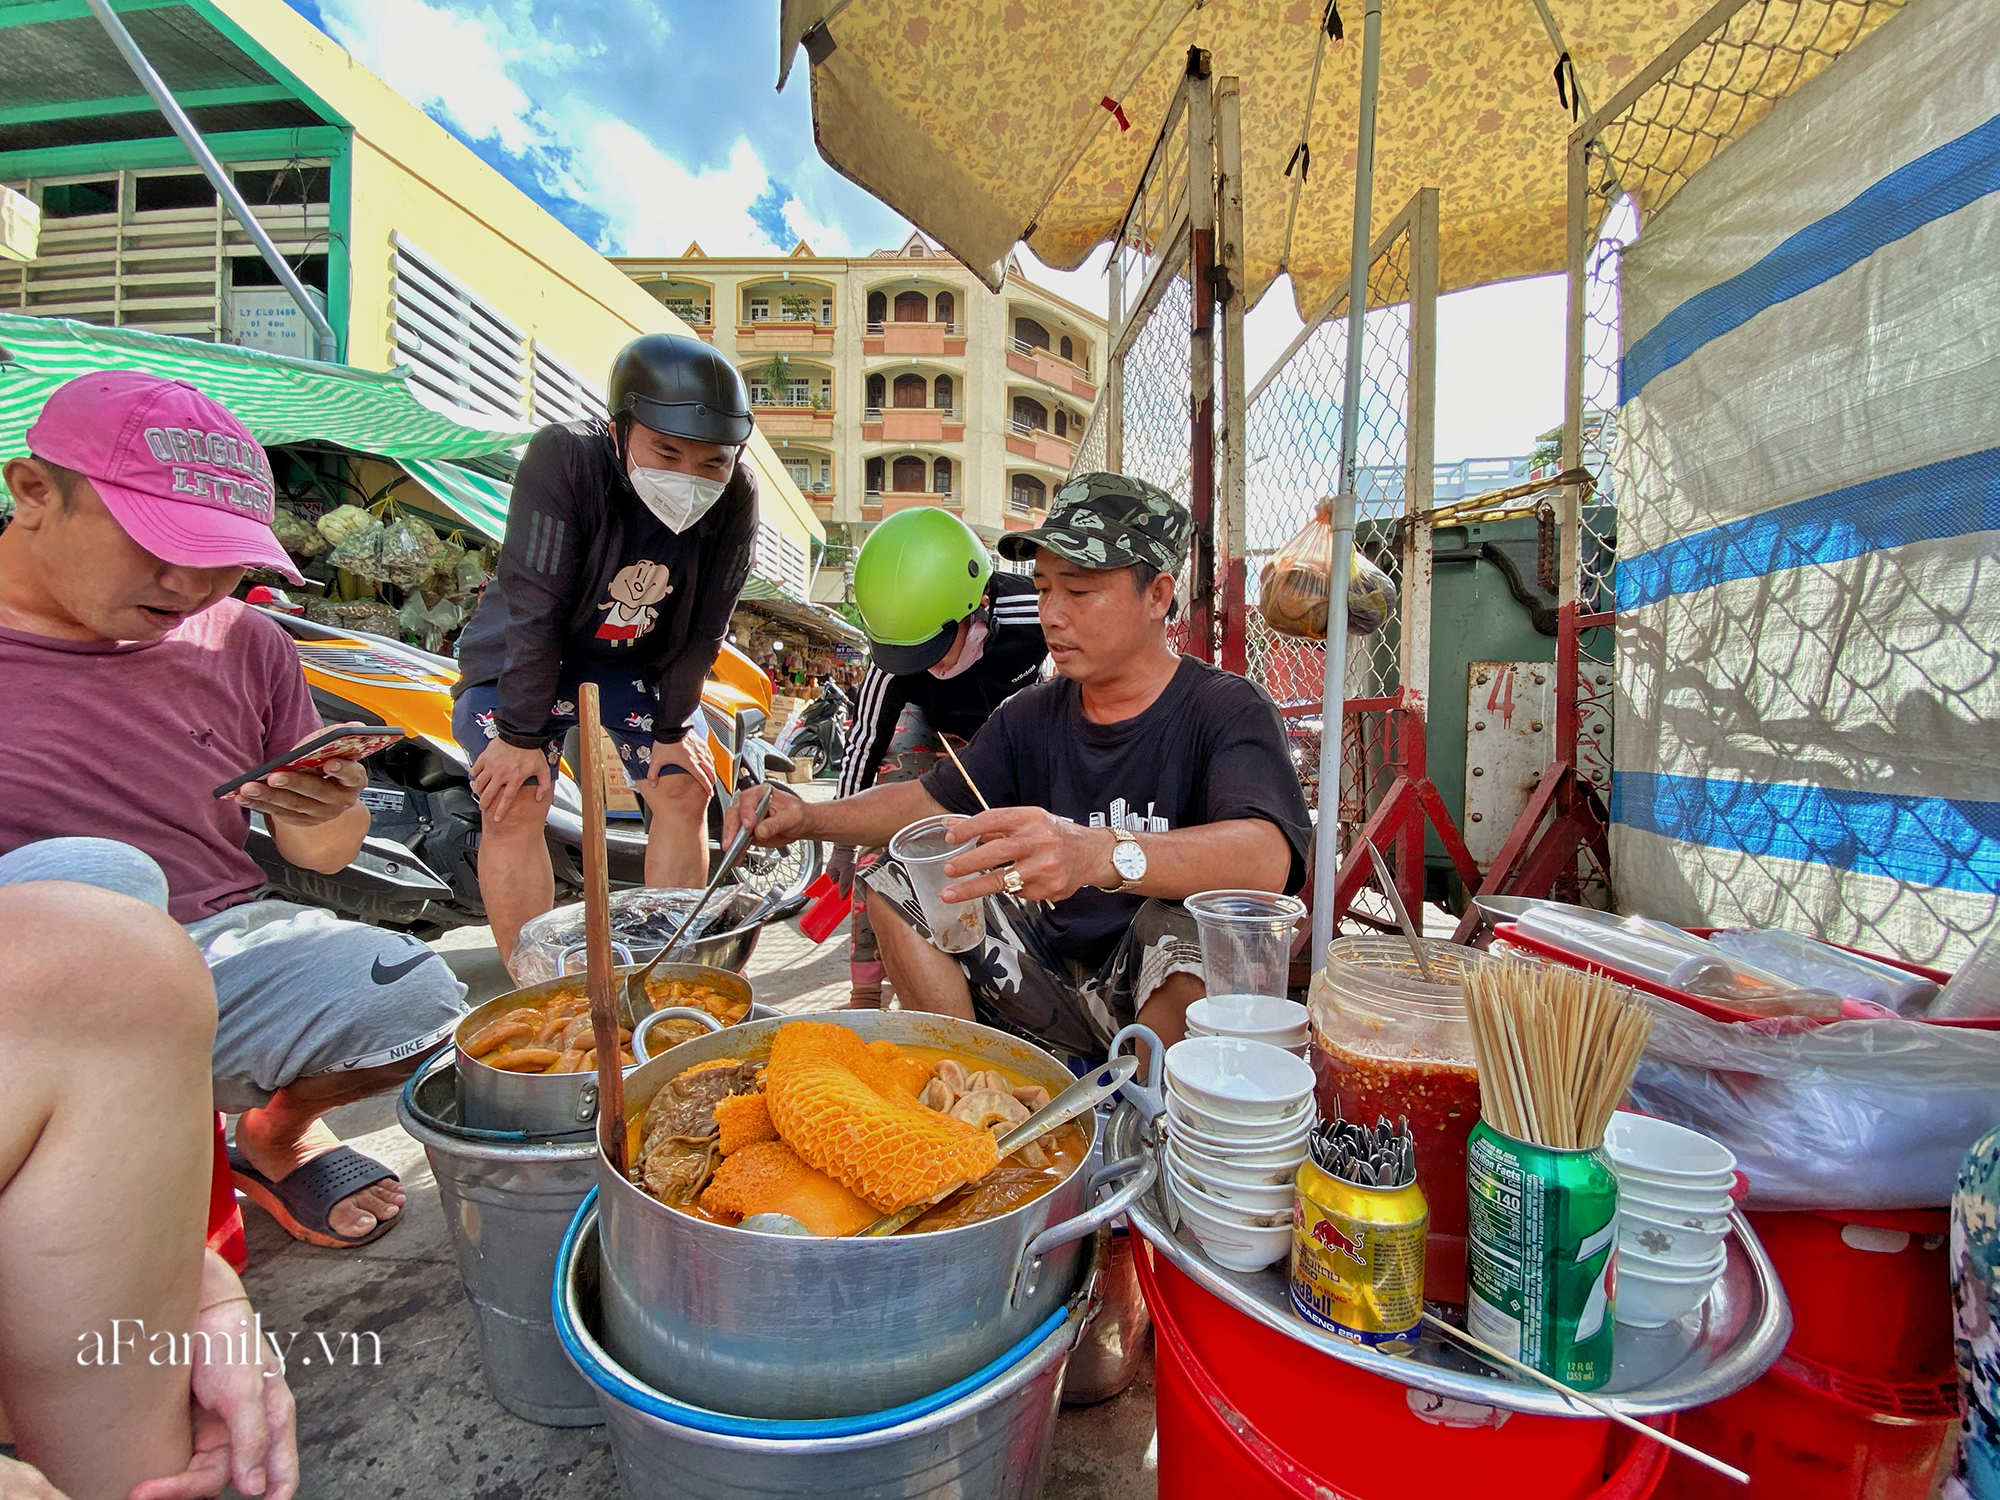 Hàng phá lấu 30 năm tuổi nổi tiếng đắt nhất Sài Gòn ở khu chợ Lớn quận 5 nay đã vượt mốc hơn nửa triệu/kg, vẫn độc quyền mùi vị và khách tứ phương đều tìm tới ăn - Ảnh 2.